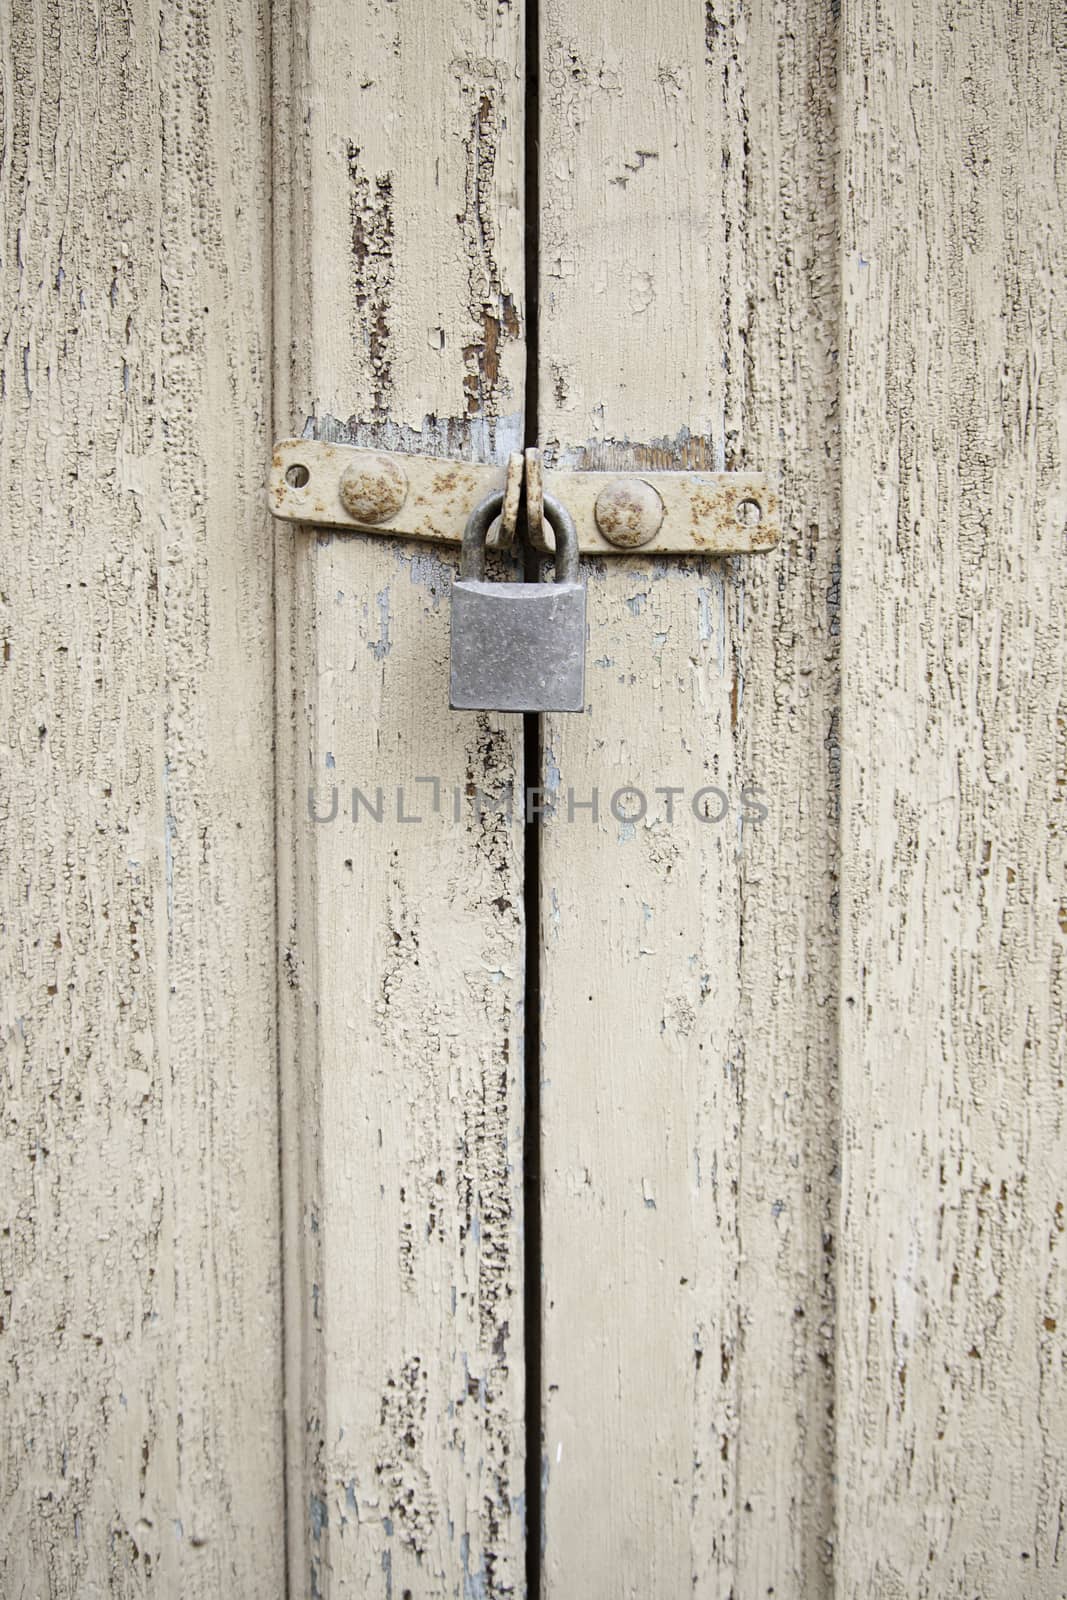 Closed wooden door, detail of an old wooden door locked with a padlock